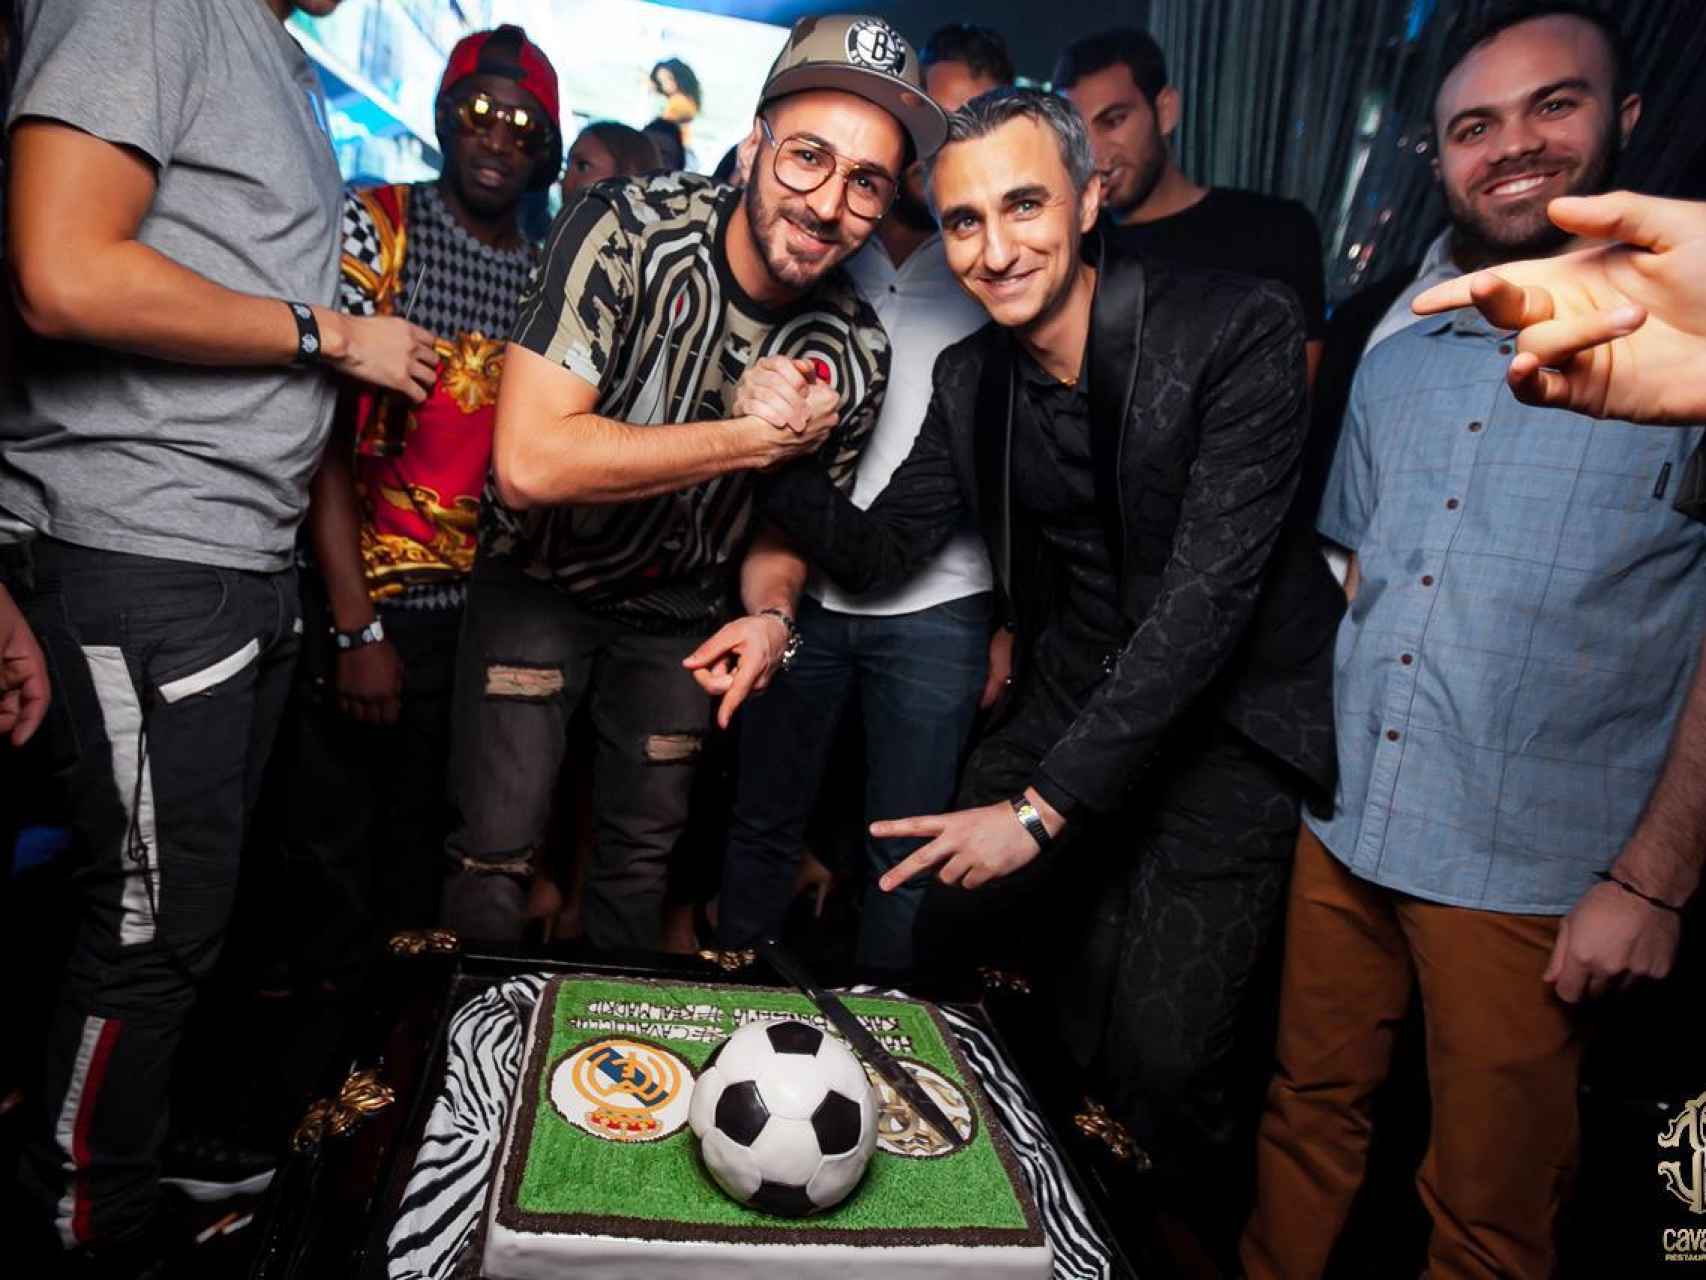 Benzema celebra su 28 cumpleaños en una discoteca de lujo en Dubai